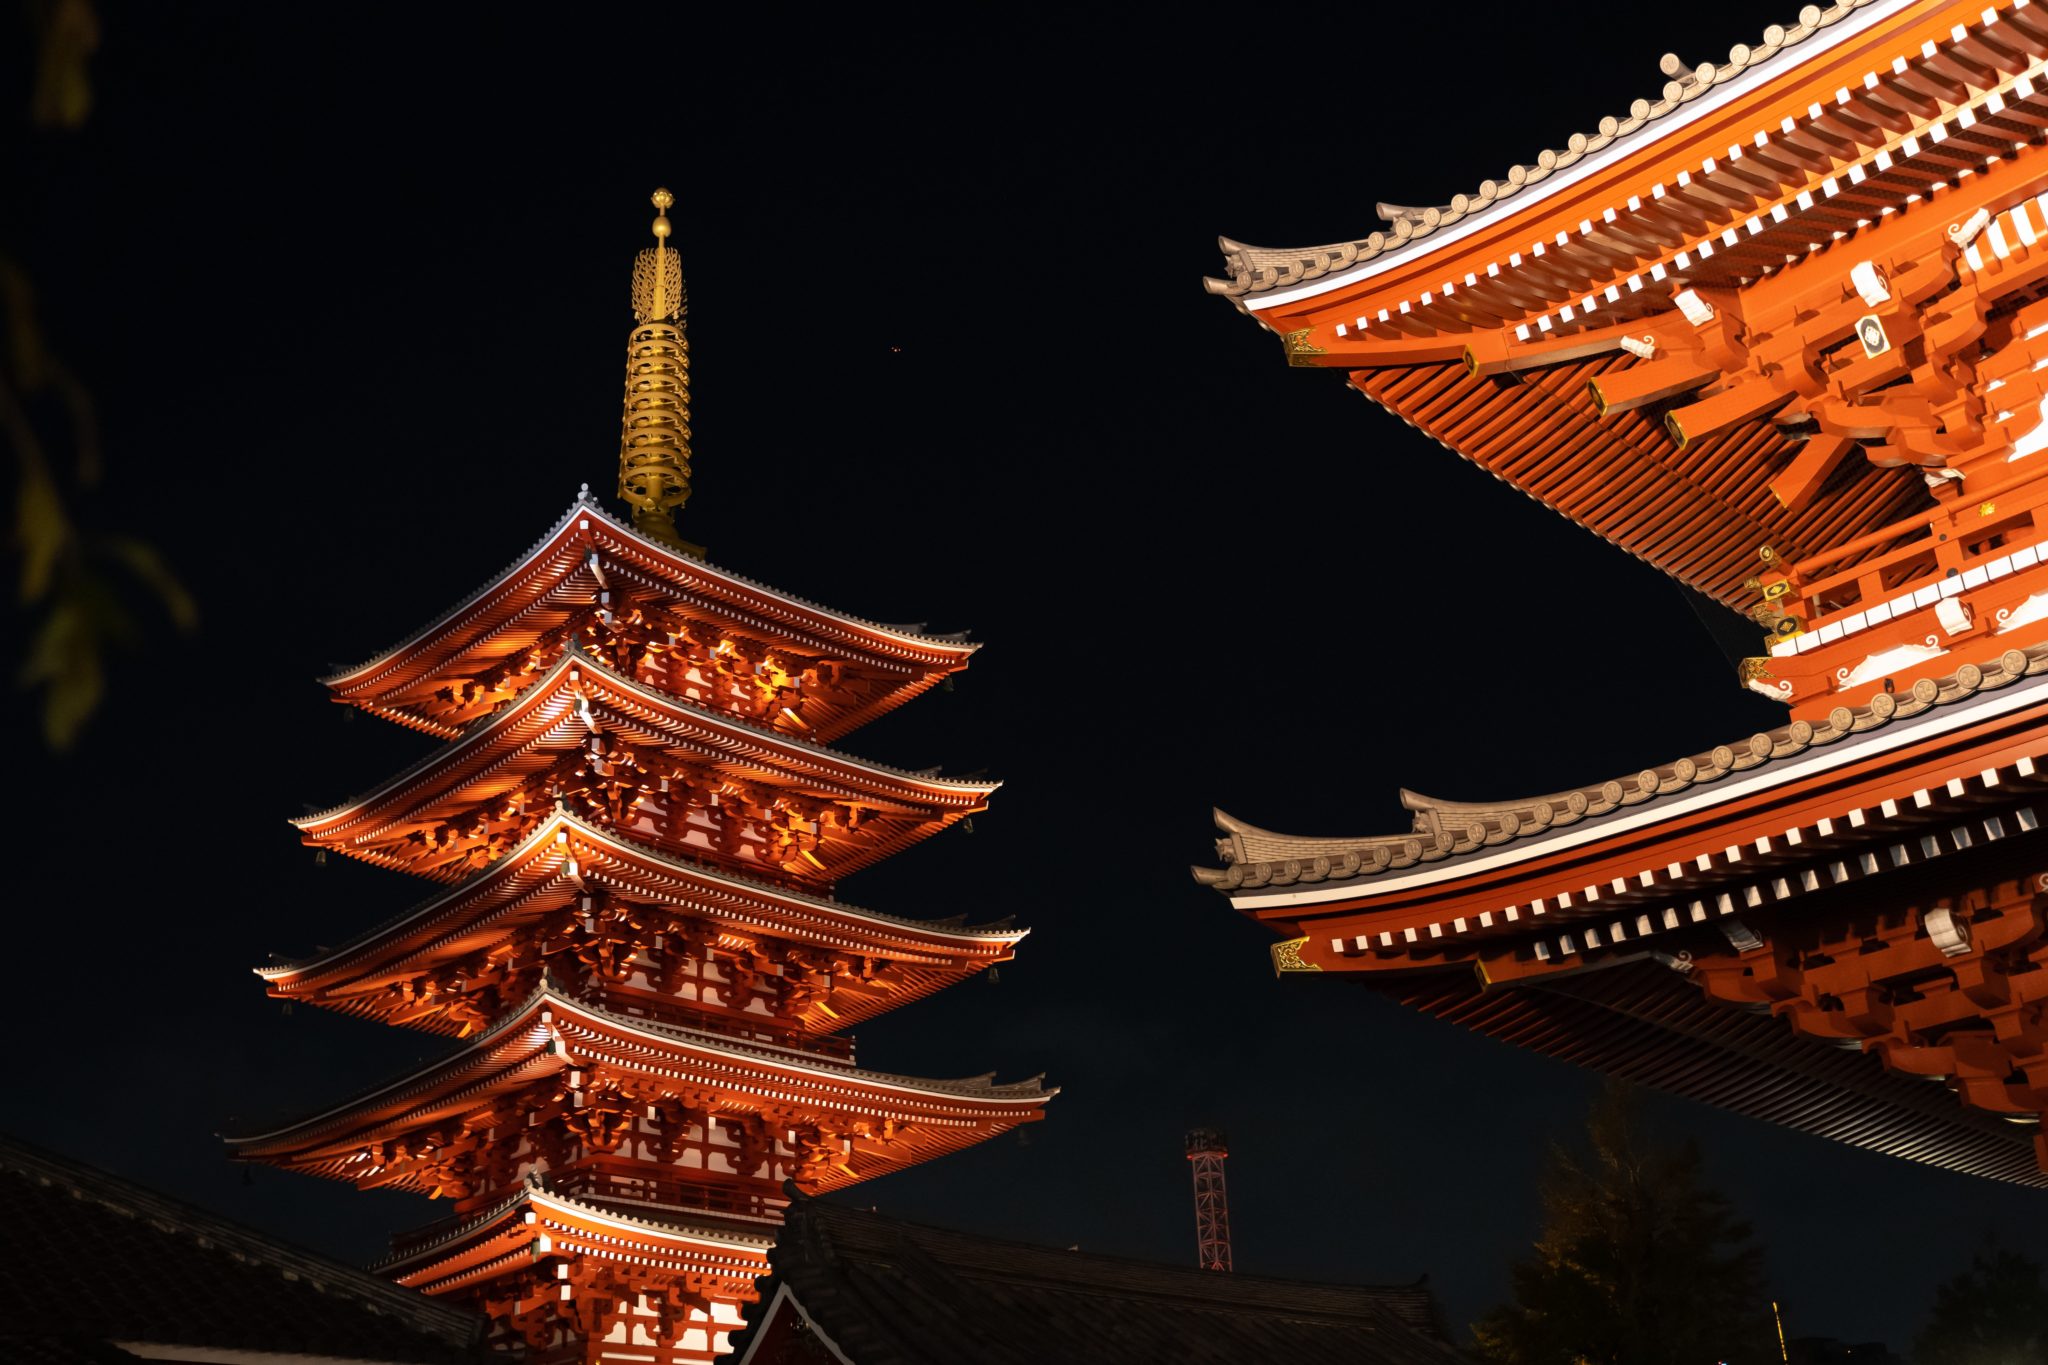 Houten pagoda's tonen aan dat houten gebouwen eeuwenlang kunnen meegaan